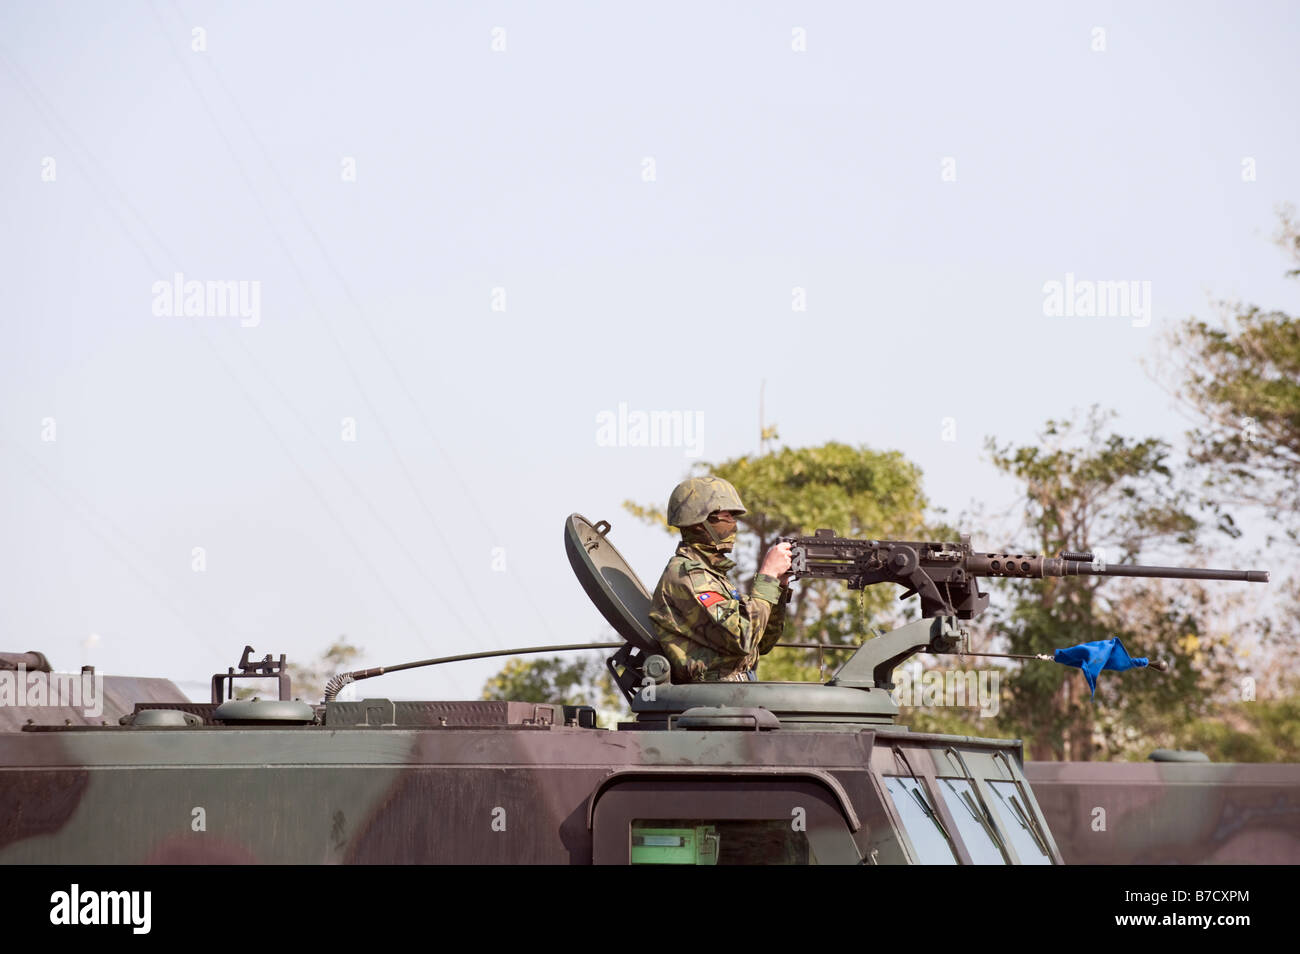 Schließen Sie oben von A Soldaten feuern A M2 Maschinengewehr auf A CM-24 gepanzerte Träger während Kriegsspiele, Taichung, Taiwan Stockfoto